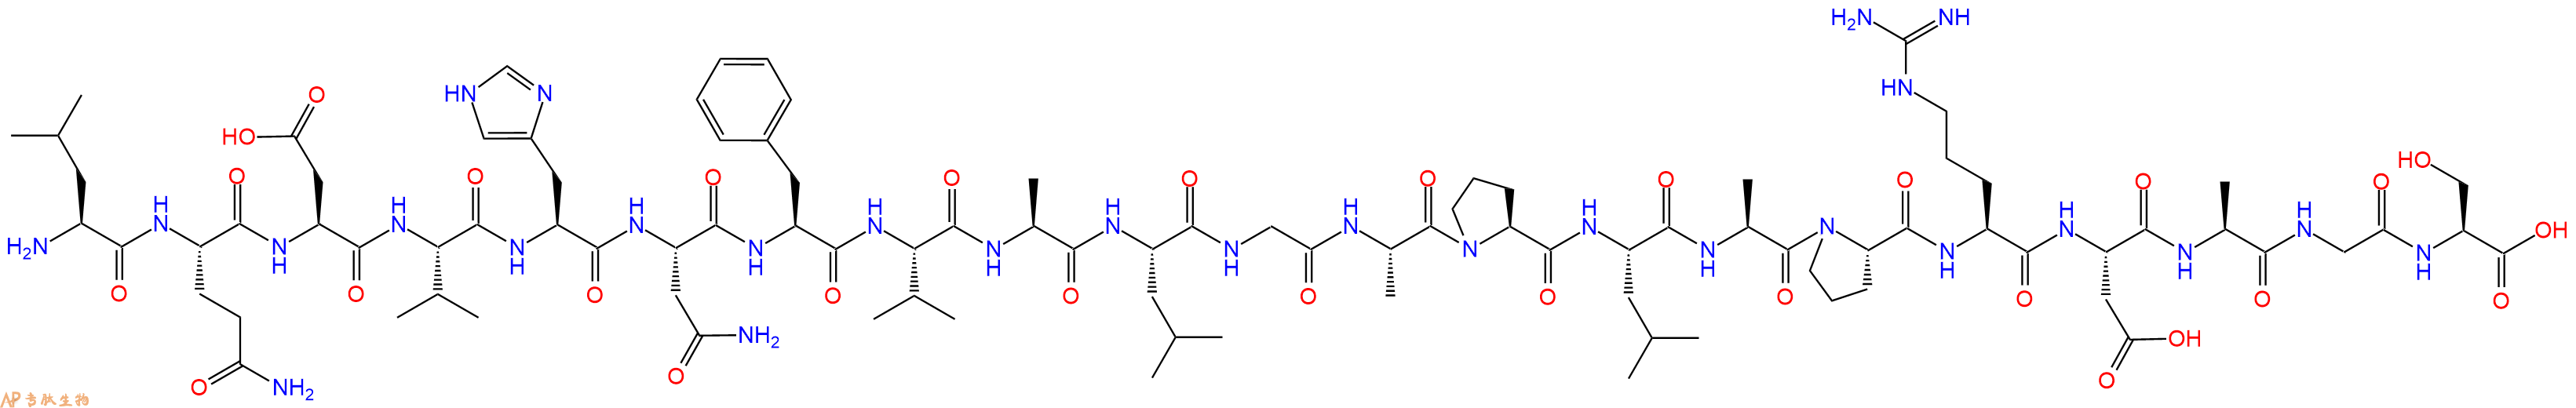 专肽生物产品甲状旁腺激素 pTH (28-48) (human)83286-22-0